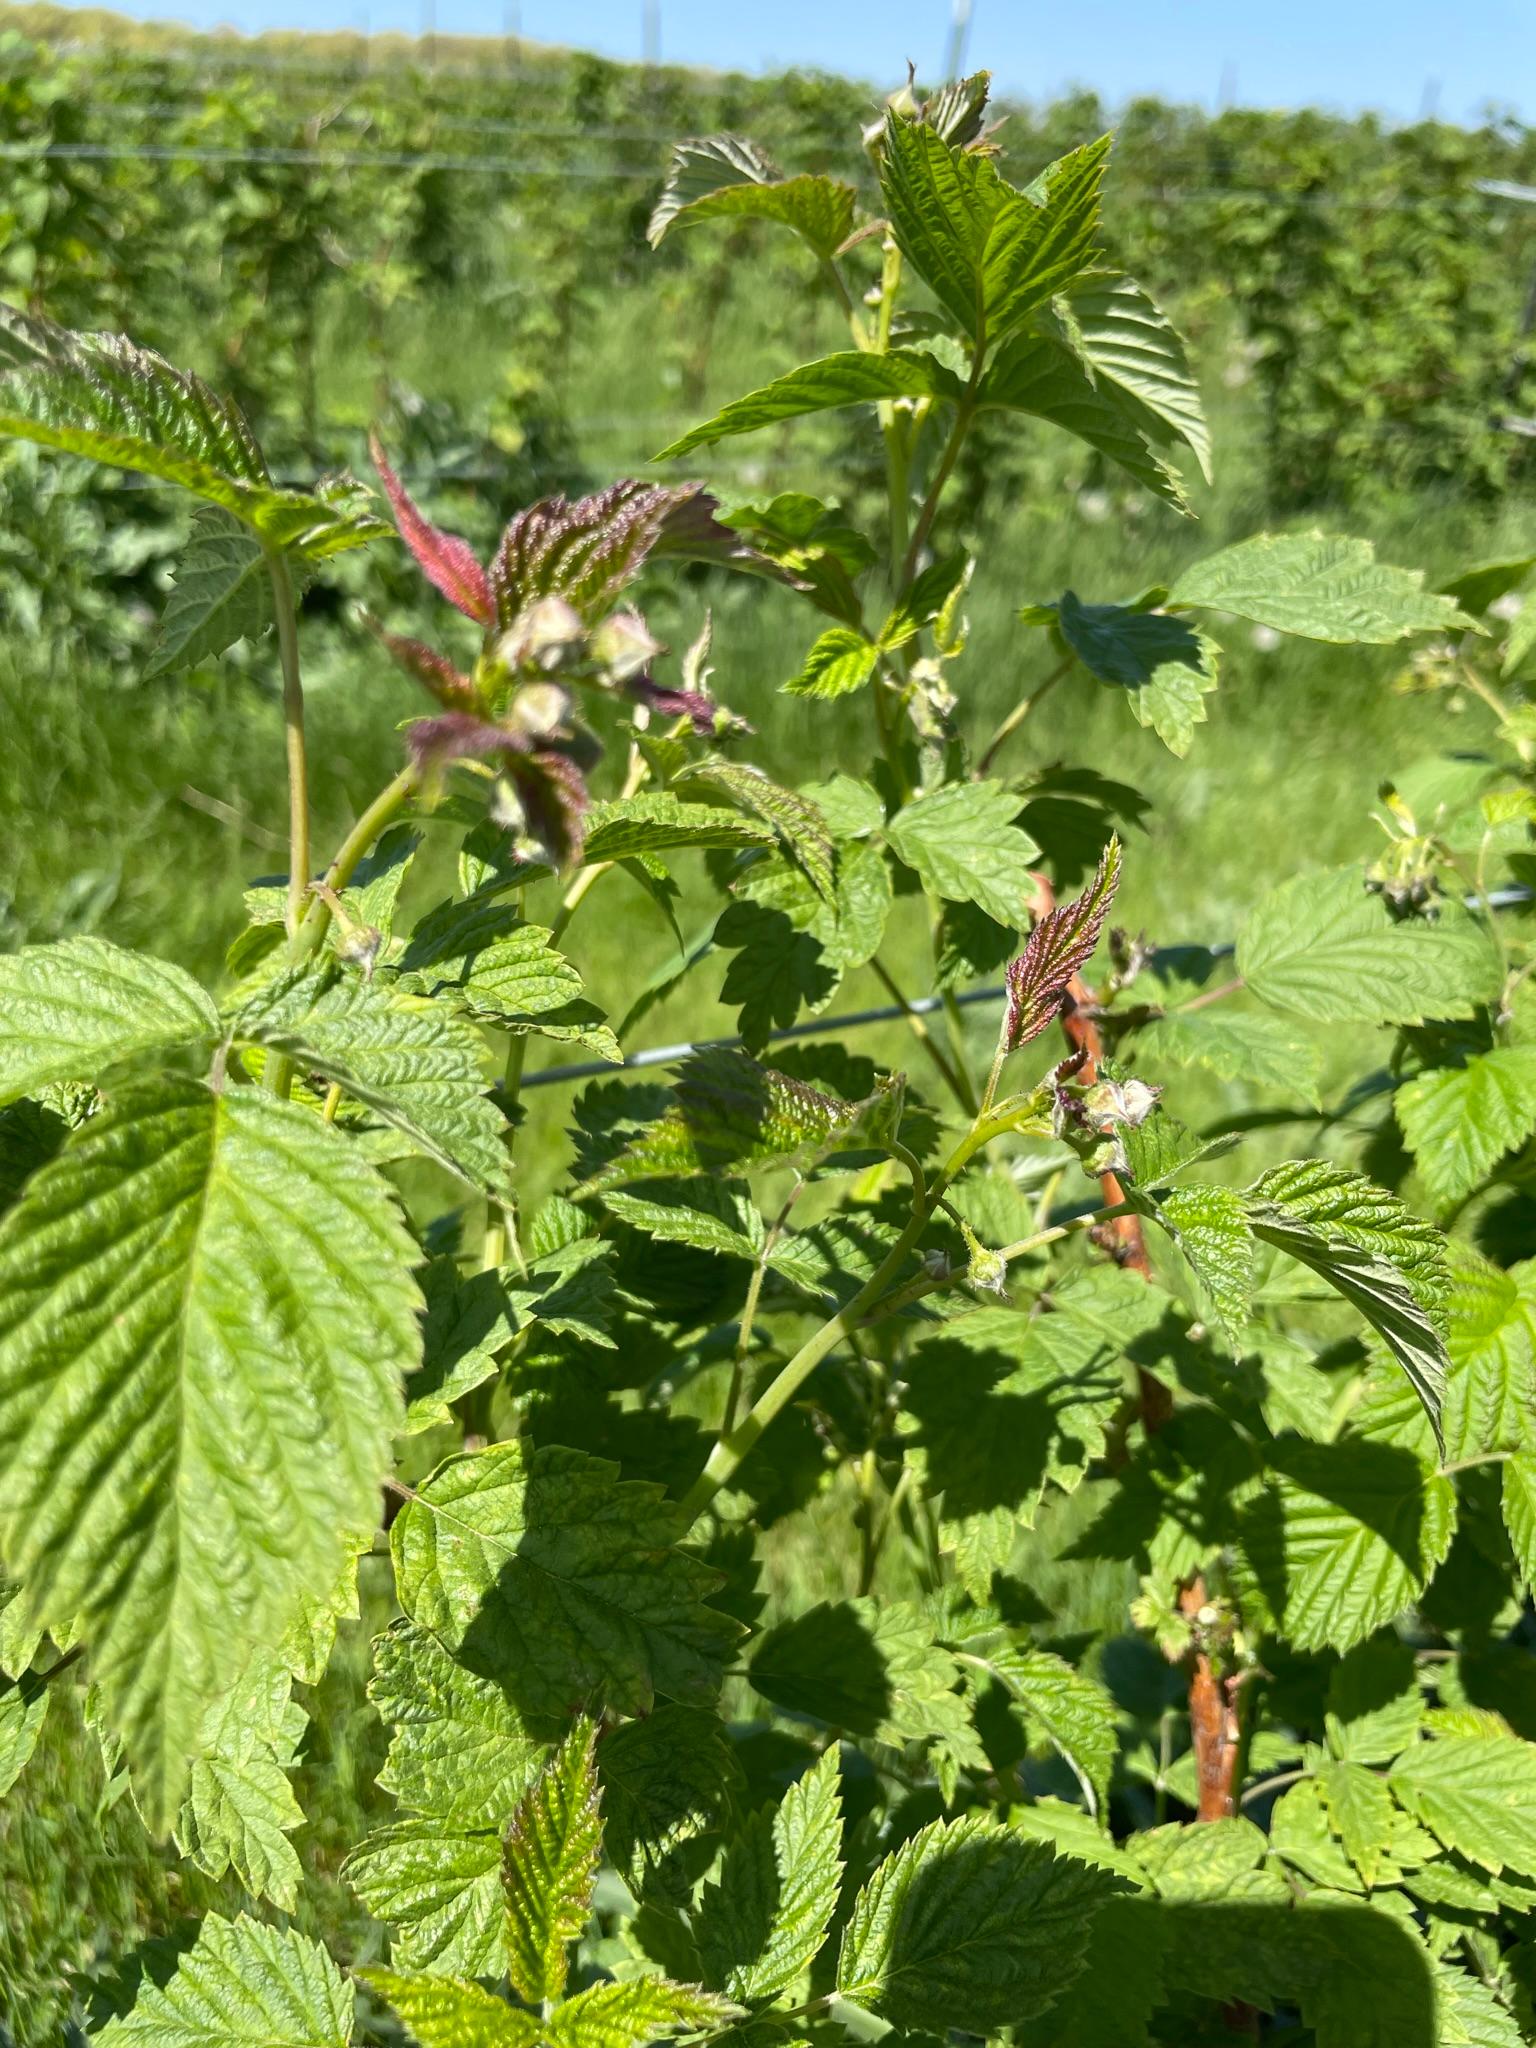 Raspberry buds.